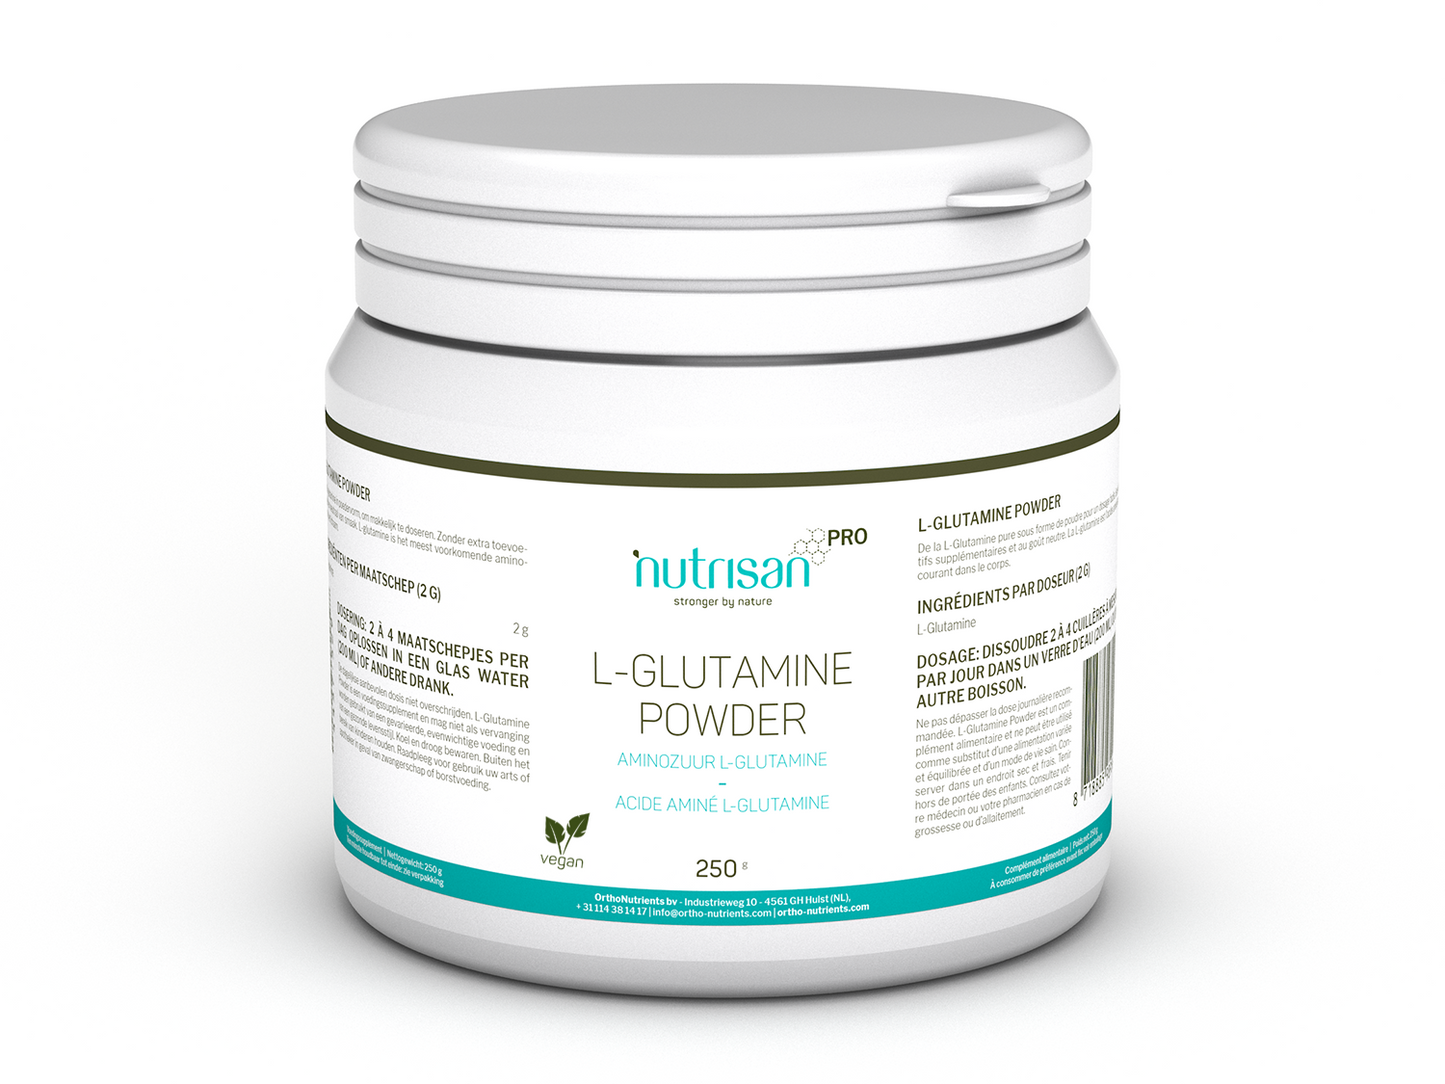 NutrisanPro L-Glutamine Powder - 250 gram